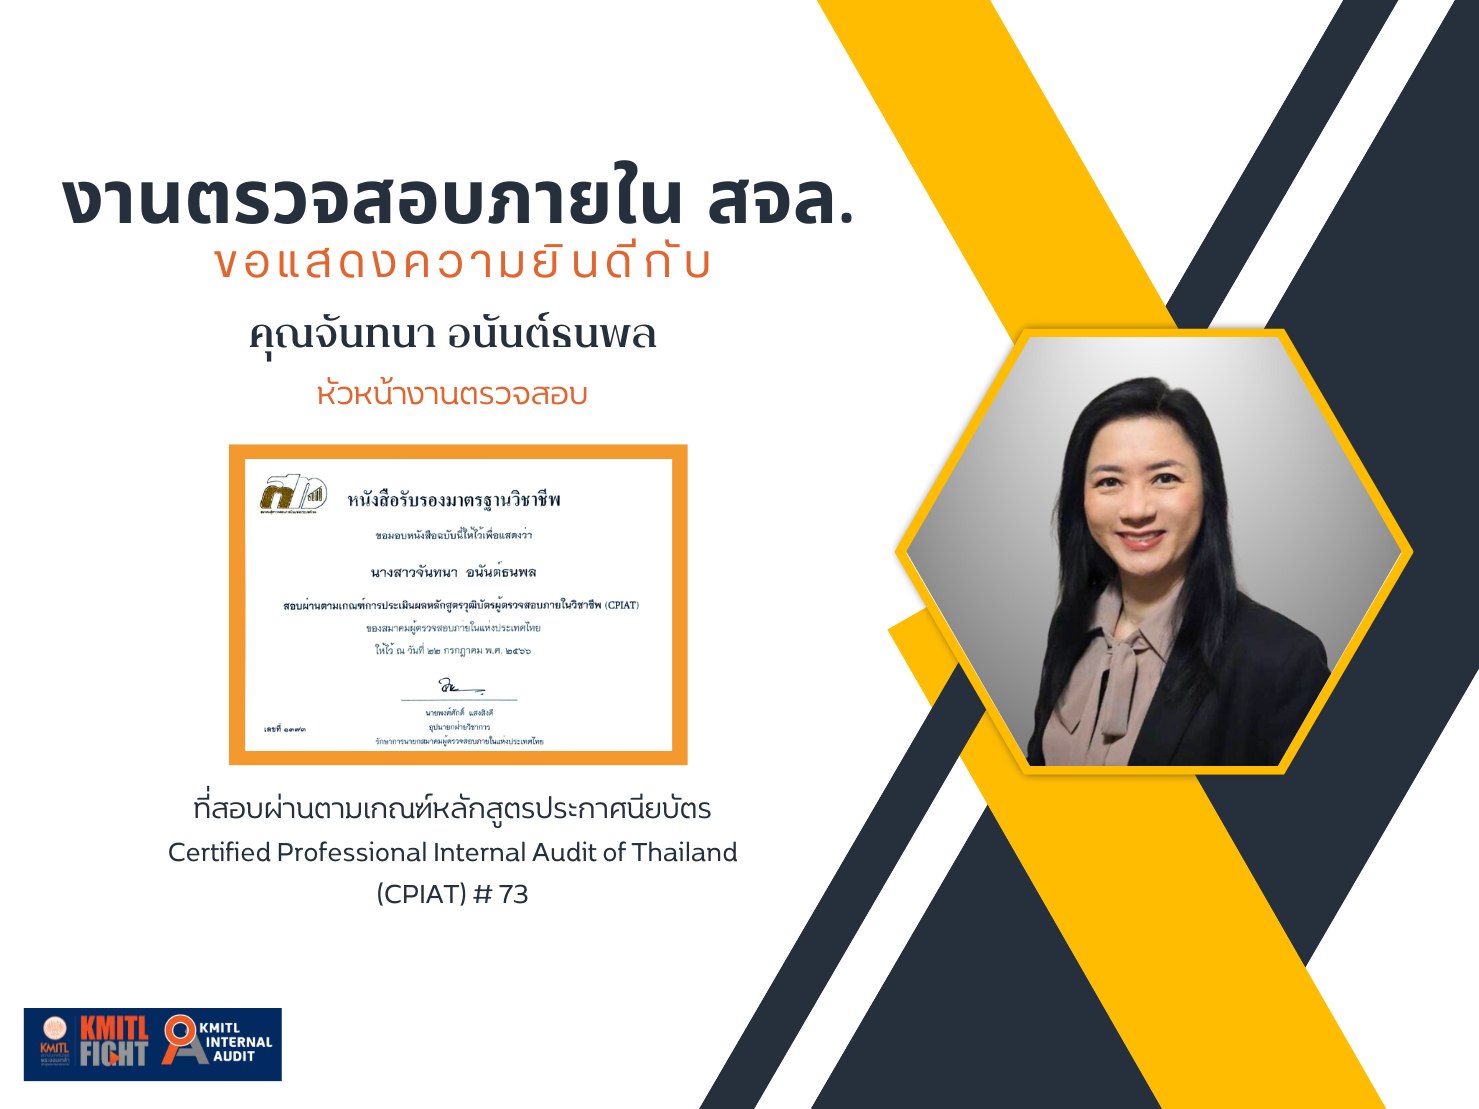 ขอแสดงความยินดีกับคุณจันทนา อนันต์ธนพล ที่สอบผ่านตามเกณฑ์หลักสูตรประกาศนียบัตร  ผู้ตรวจสอบภายในของประเทศไทย Certified Professional Internal Audit of Thailand (CPIAT) # 73